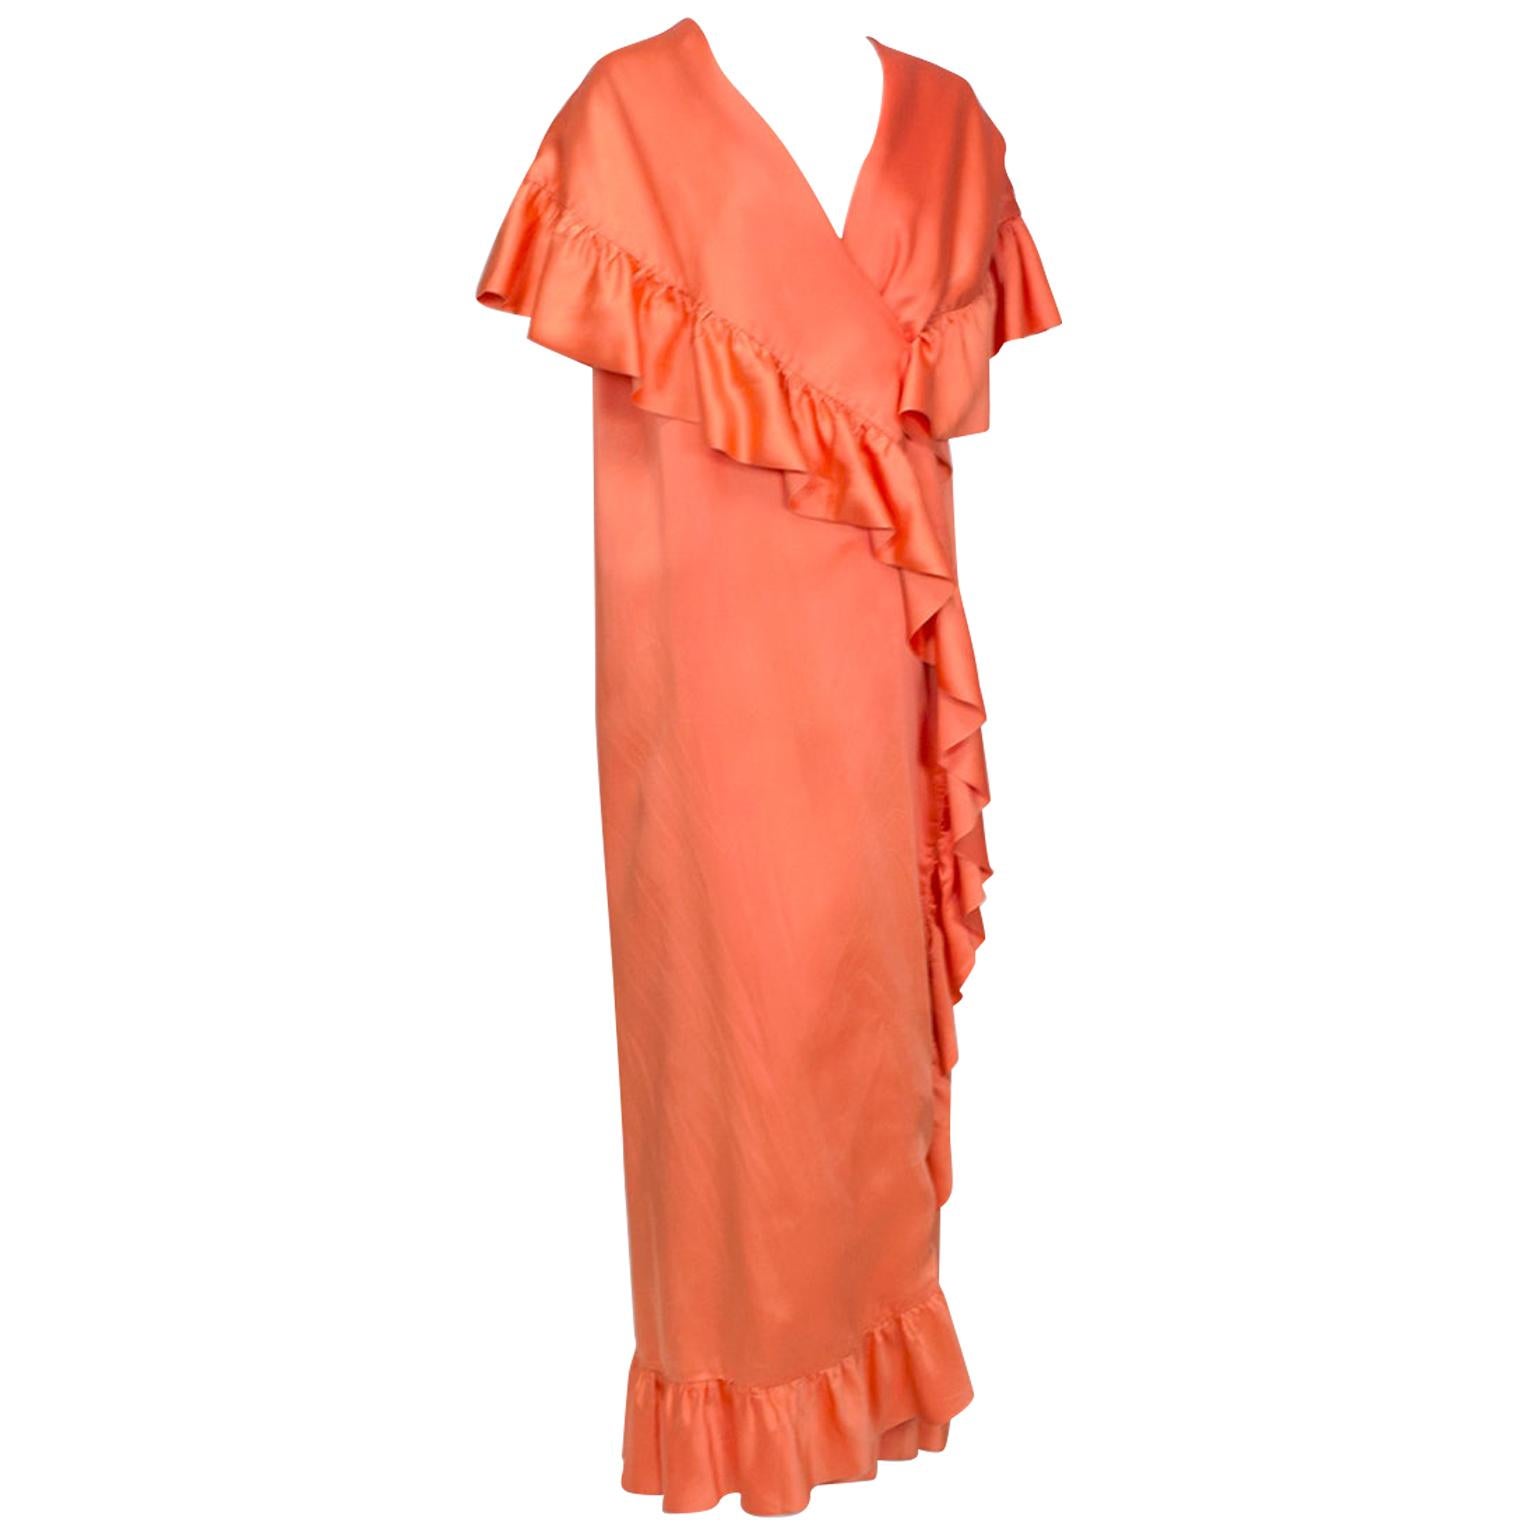 Tangerine Satin Sleeveless Cape Coat Dress with Cascading Ruffles–O/S, 1960s